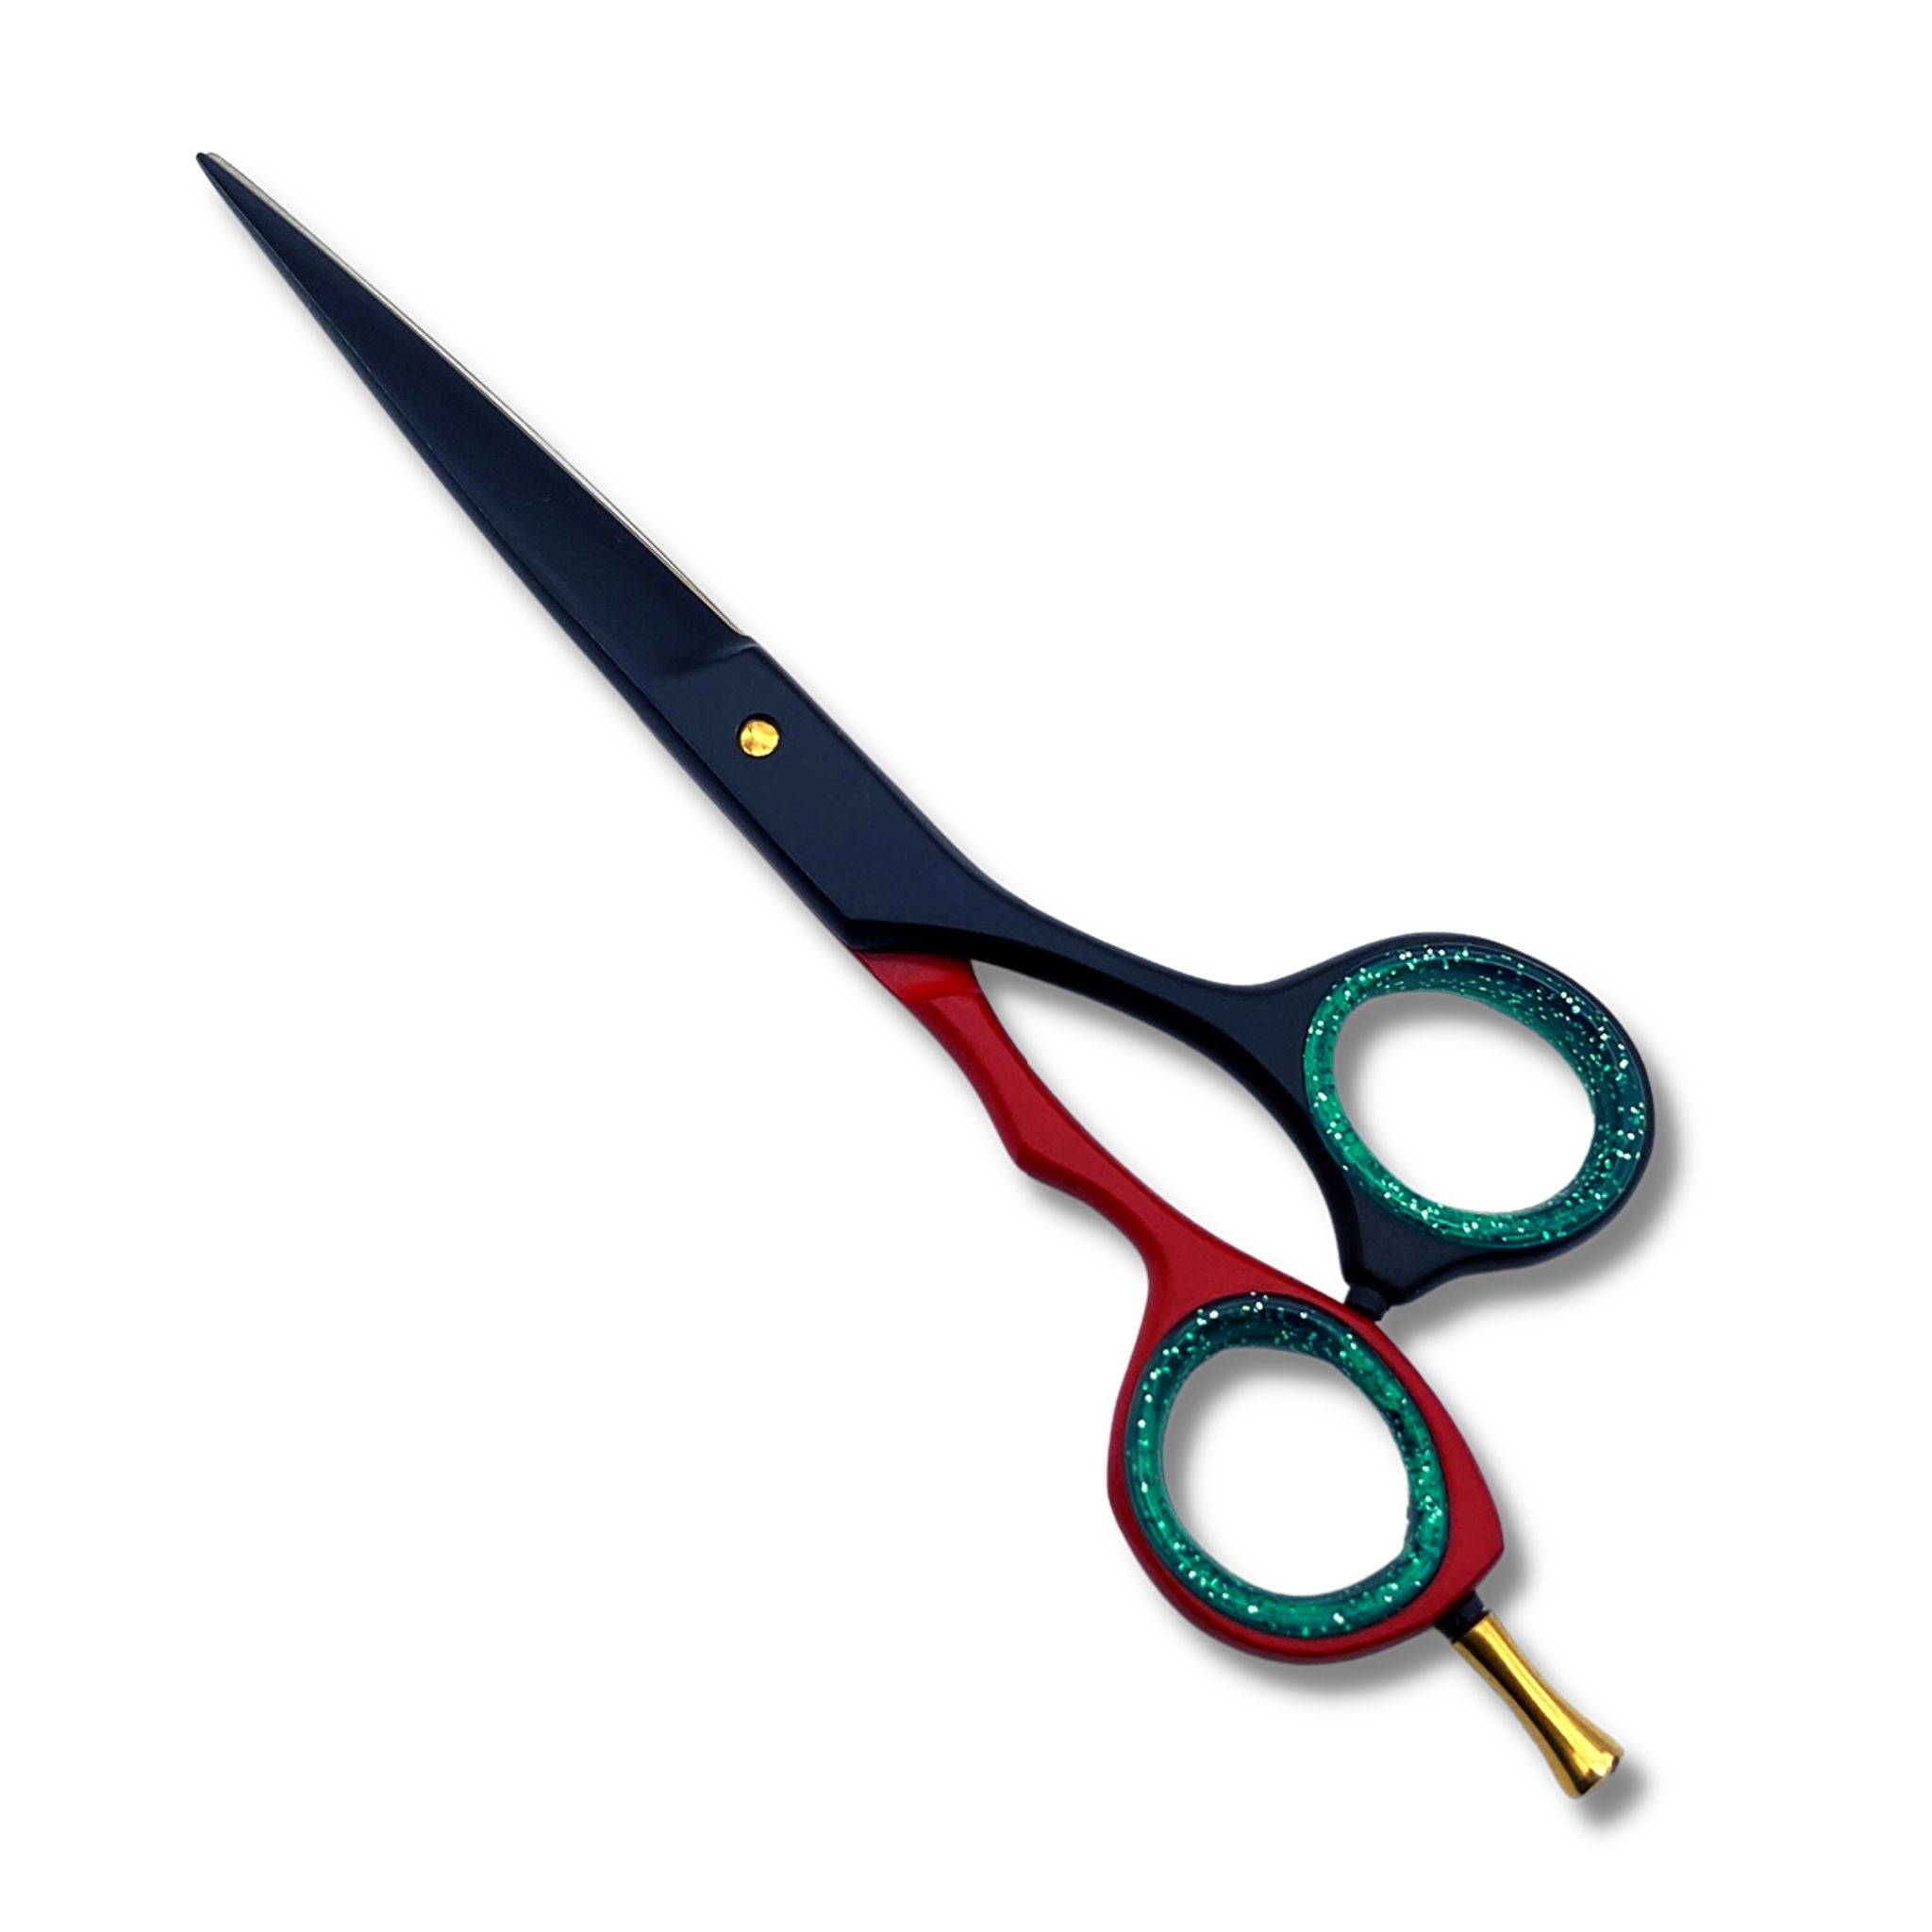 barber hair scissors salon shears - viva instruments 